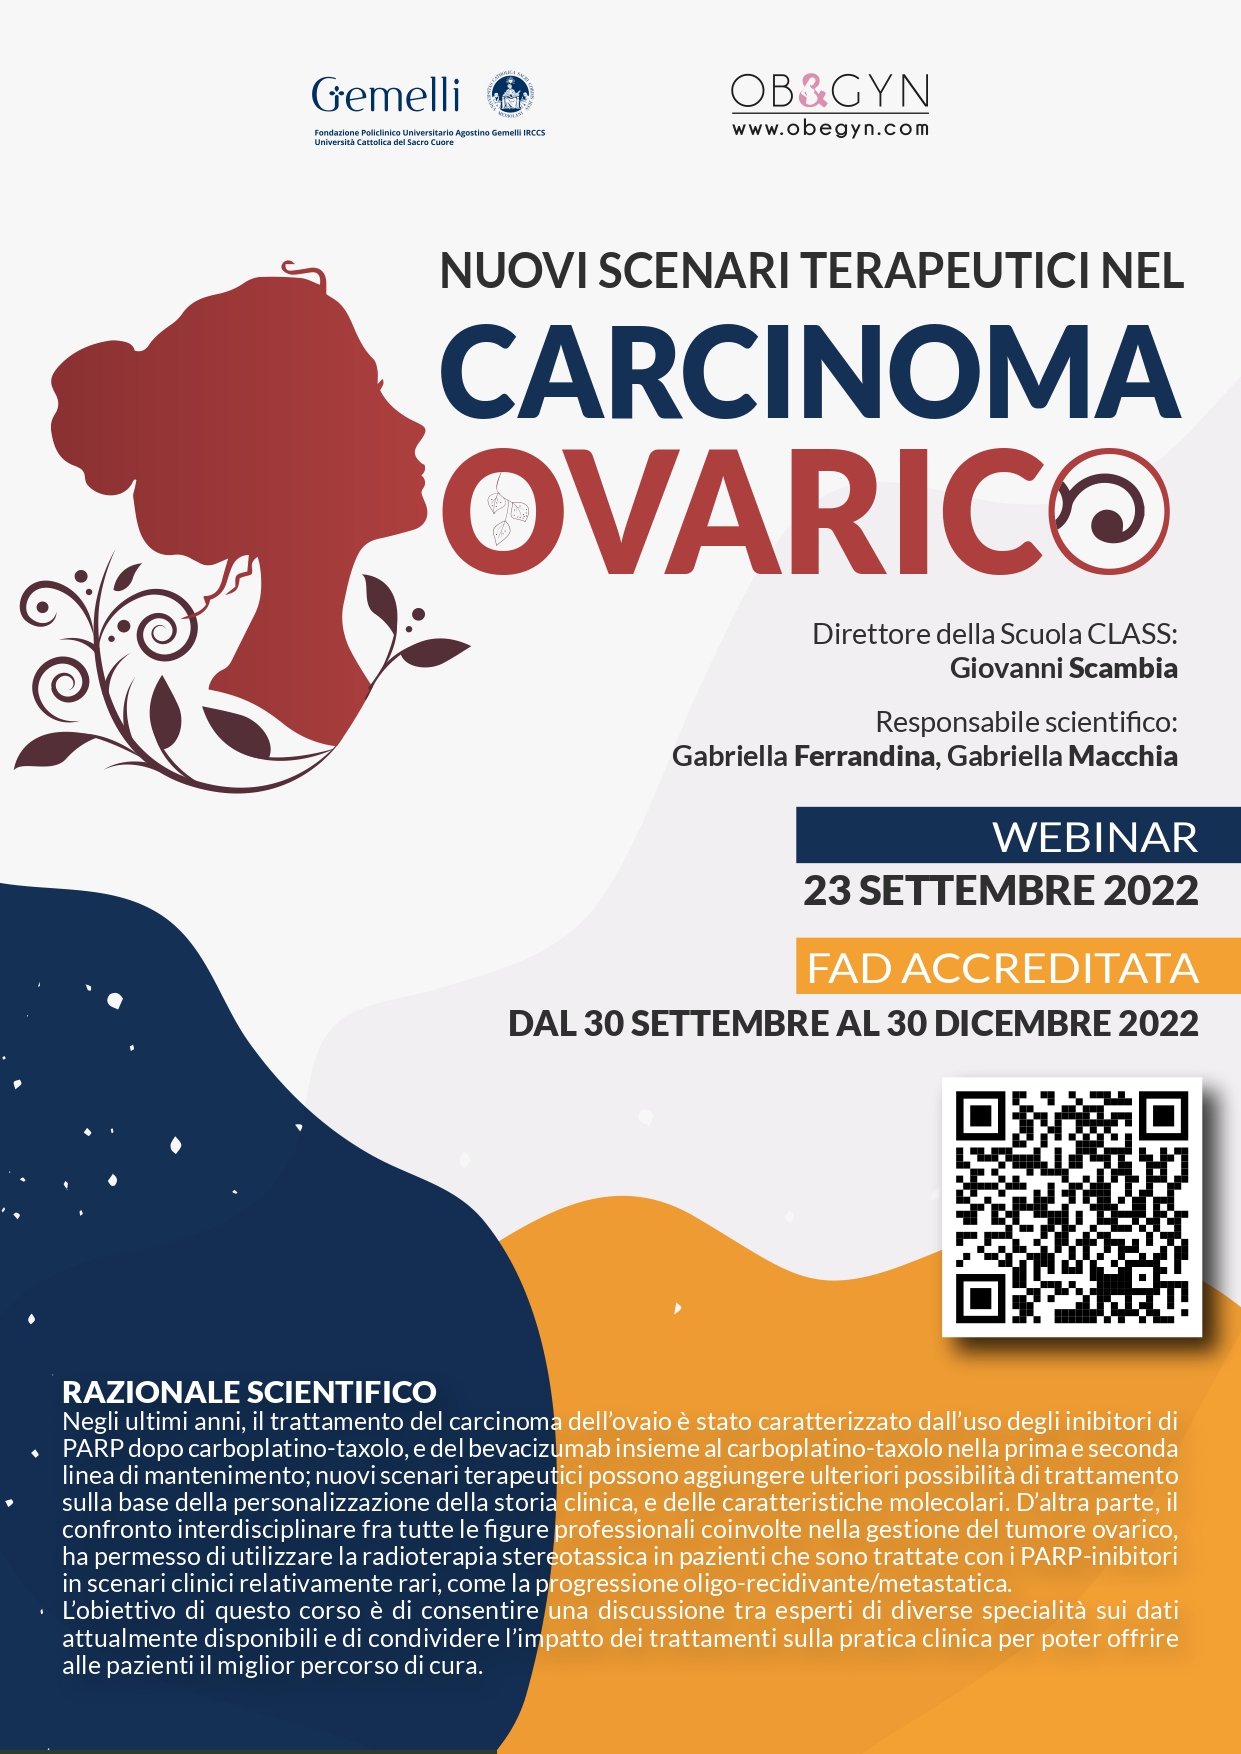 Programma NUOVI SCENARI TERAPEUTICI NEL CARCINOMA OVARICO - webinar 23/09/2022 - FAD accreditata dal 30/09 al 30/12/2022